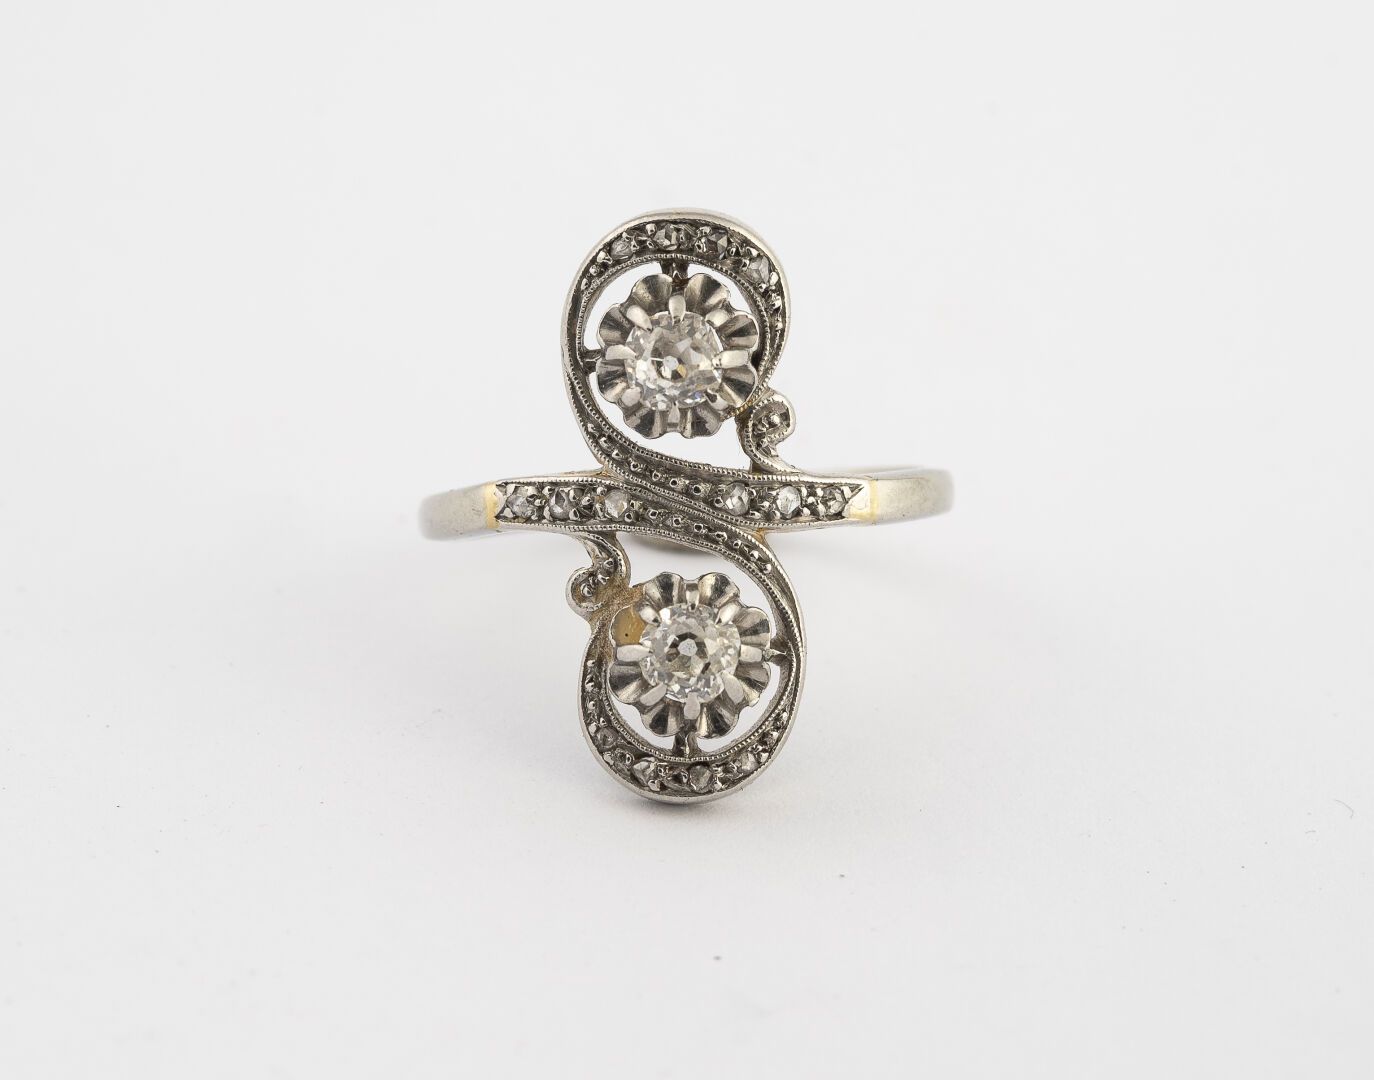 Null 十字环

750°/°的白金和铂金材质

镶嵌有两颗TA钻石的玫瑰花

约1920年

毛重：4.9克 - TD.60

(划痕)